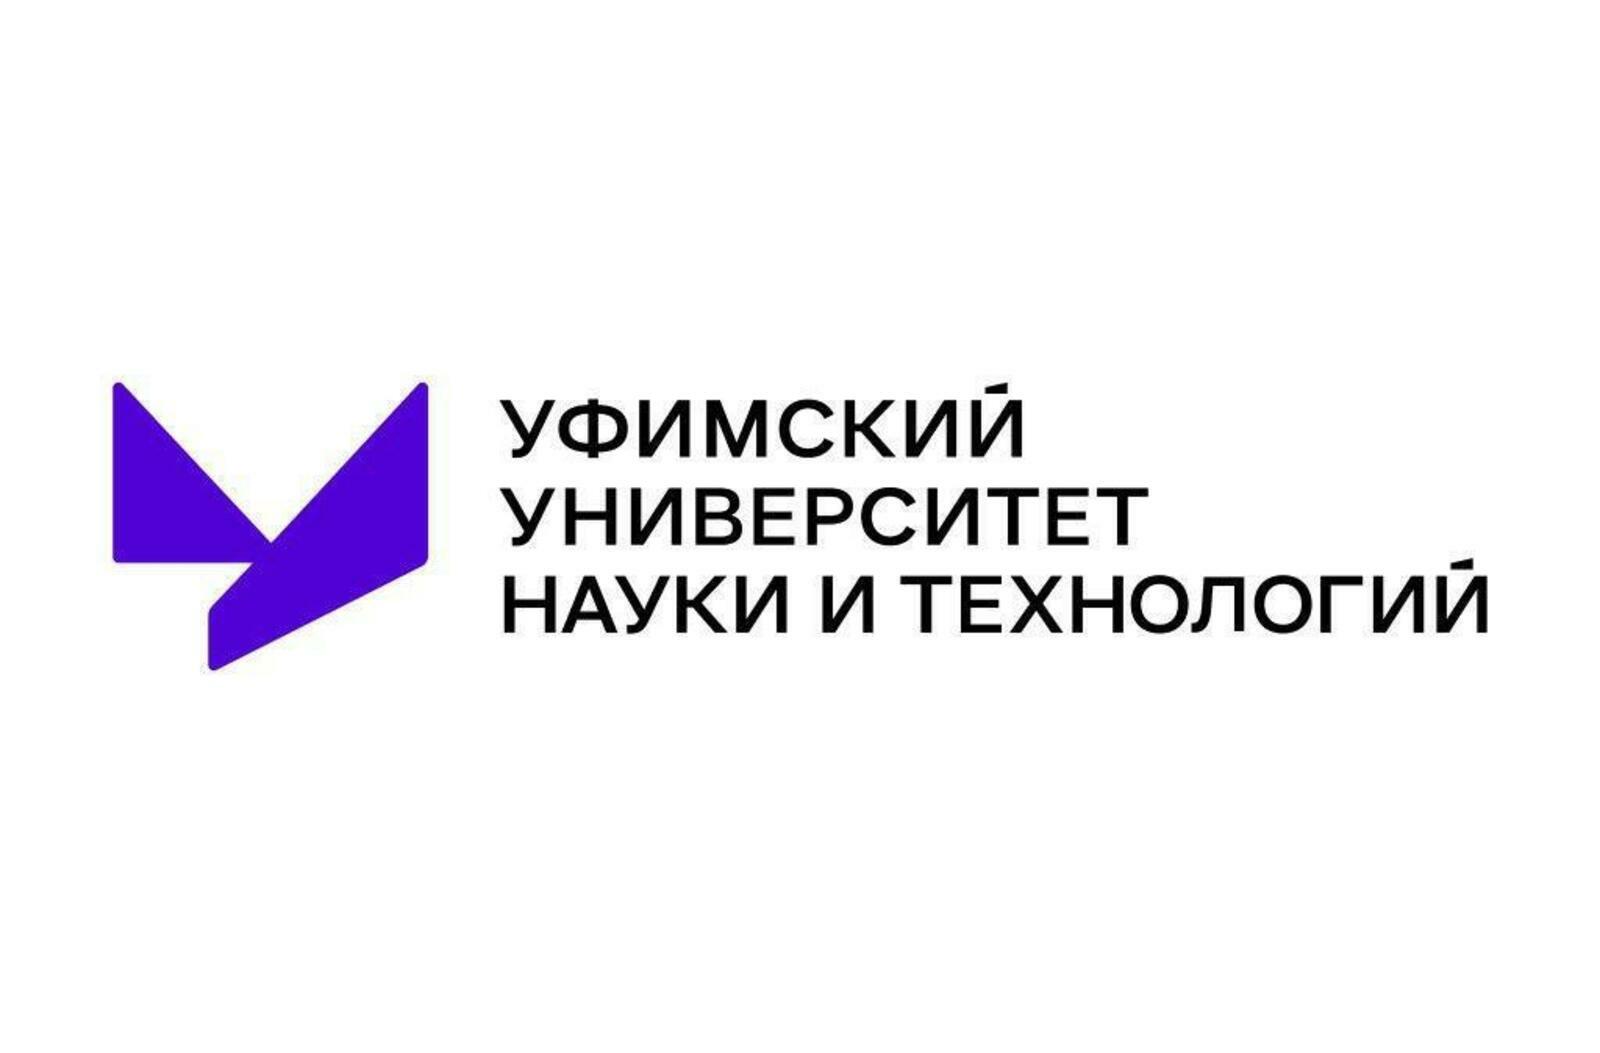 Башкирия делает уверенные шаги в научно-технологическом развитии  – Дмитрий Чернышенко об исполнения поручения президента Путина